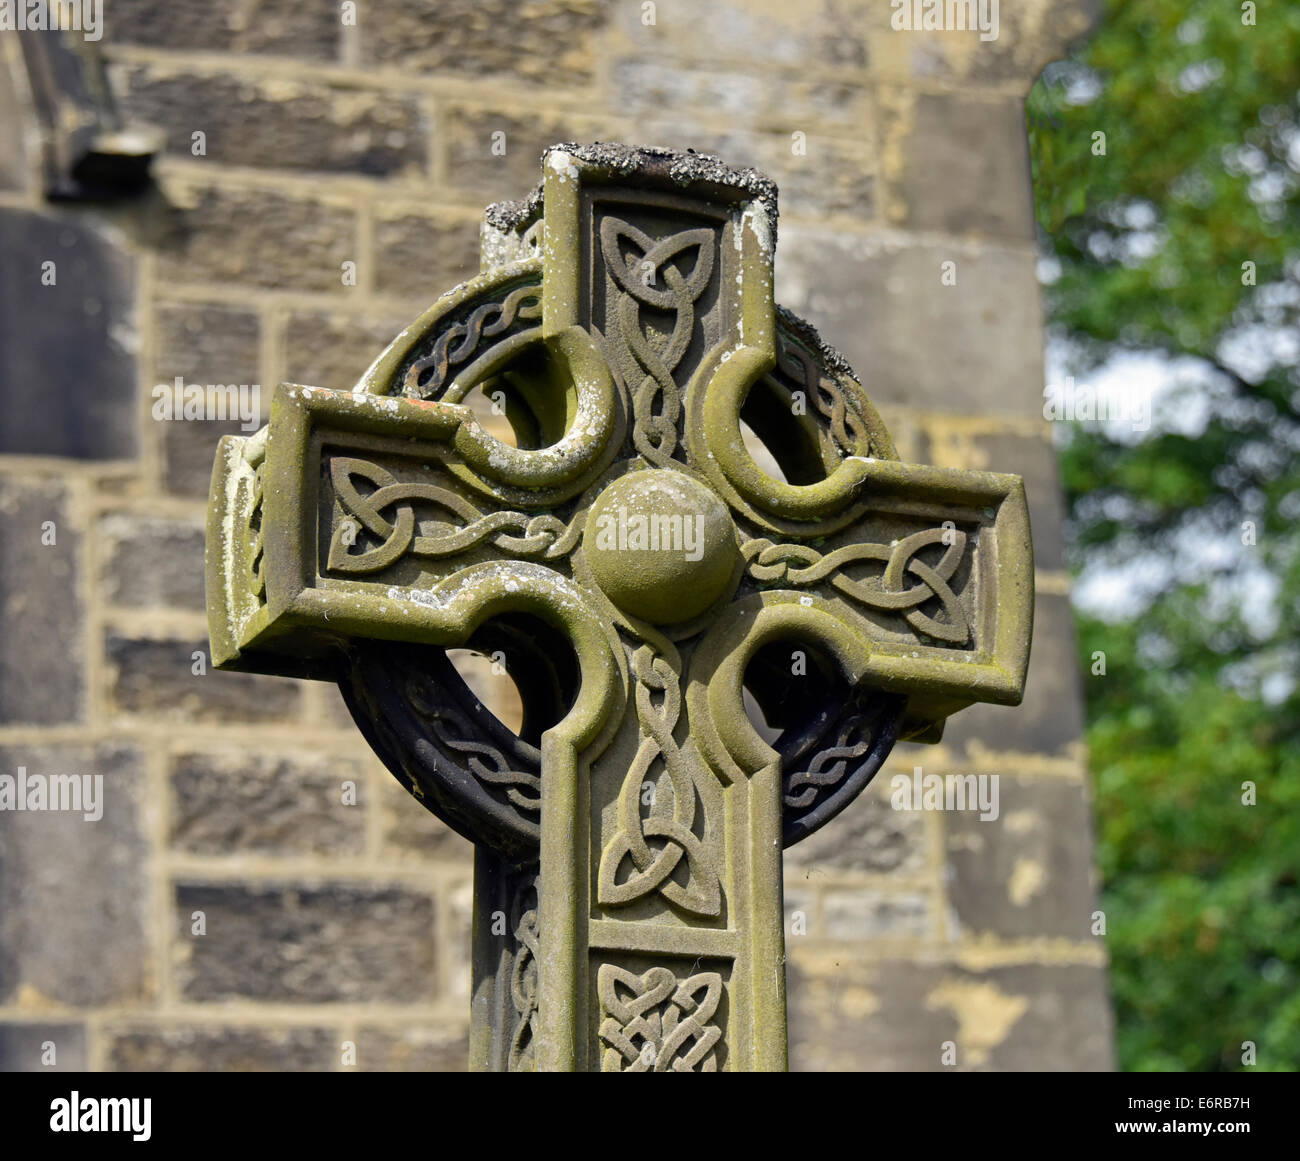 La conception celtique de traverse. Église de Saint Pierre. Addingham, West Yorkshire, Angleterre, Royaume-Uni, Europe. Banque D'Images